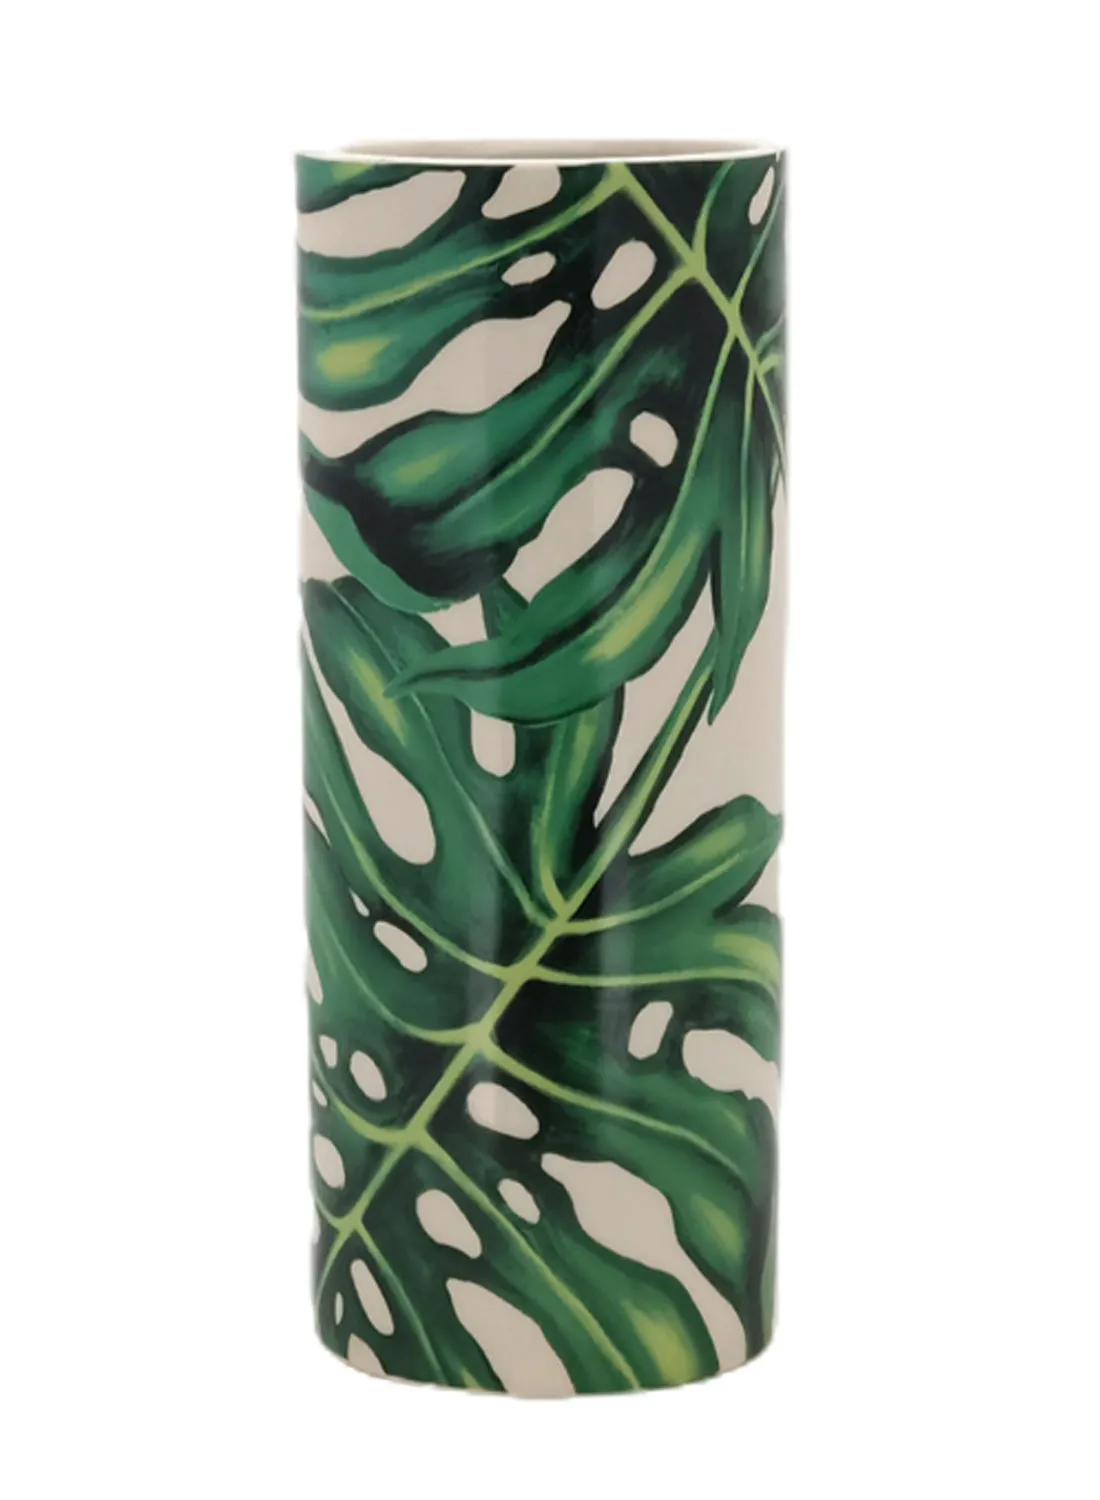 مزهرية من السيراميك ذات تصميمات جميلة ، مواد ذات جودة فريدة فريدة من نوعها لمنزل أنيق ومثالي N13-005 أبيض / أخضر 16 × 39 سم